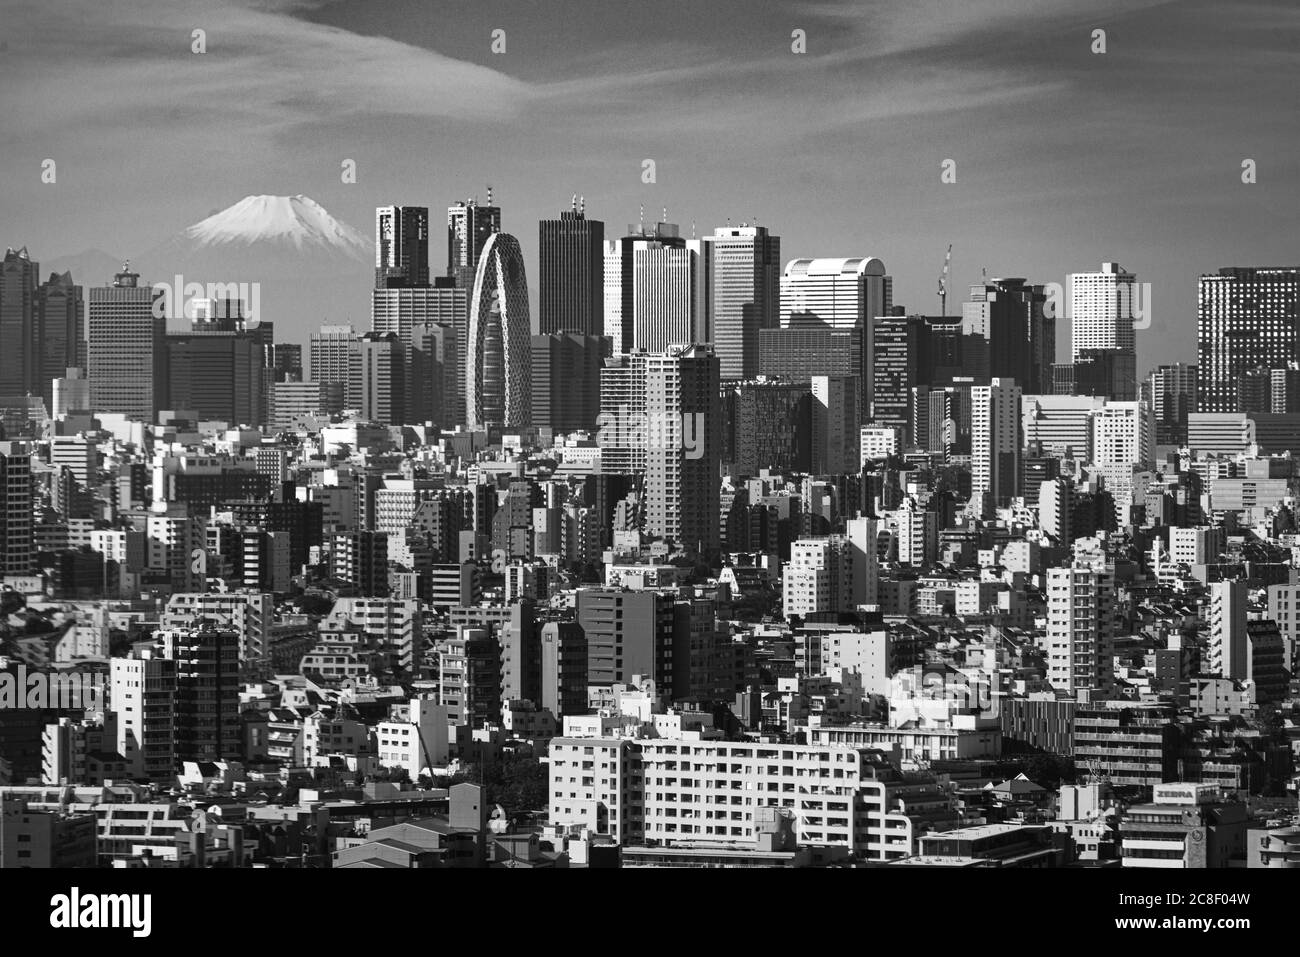 Schwarz-Weiß-Foto des Skylles von Tokyo mit dem Berg Fuji in der Ferne. Wolkenkratzer bilden die Stockfoto